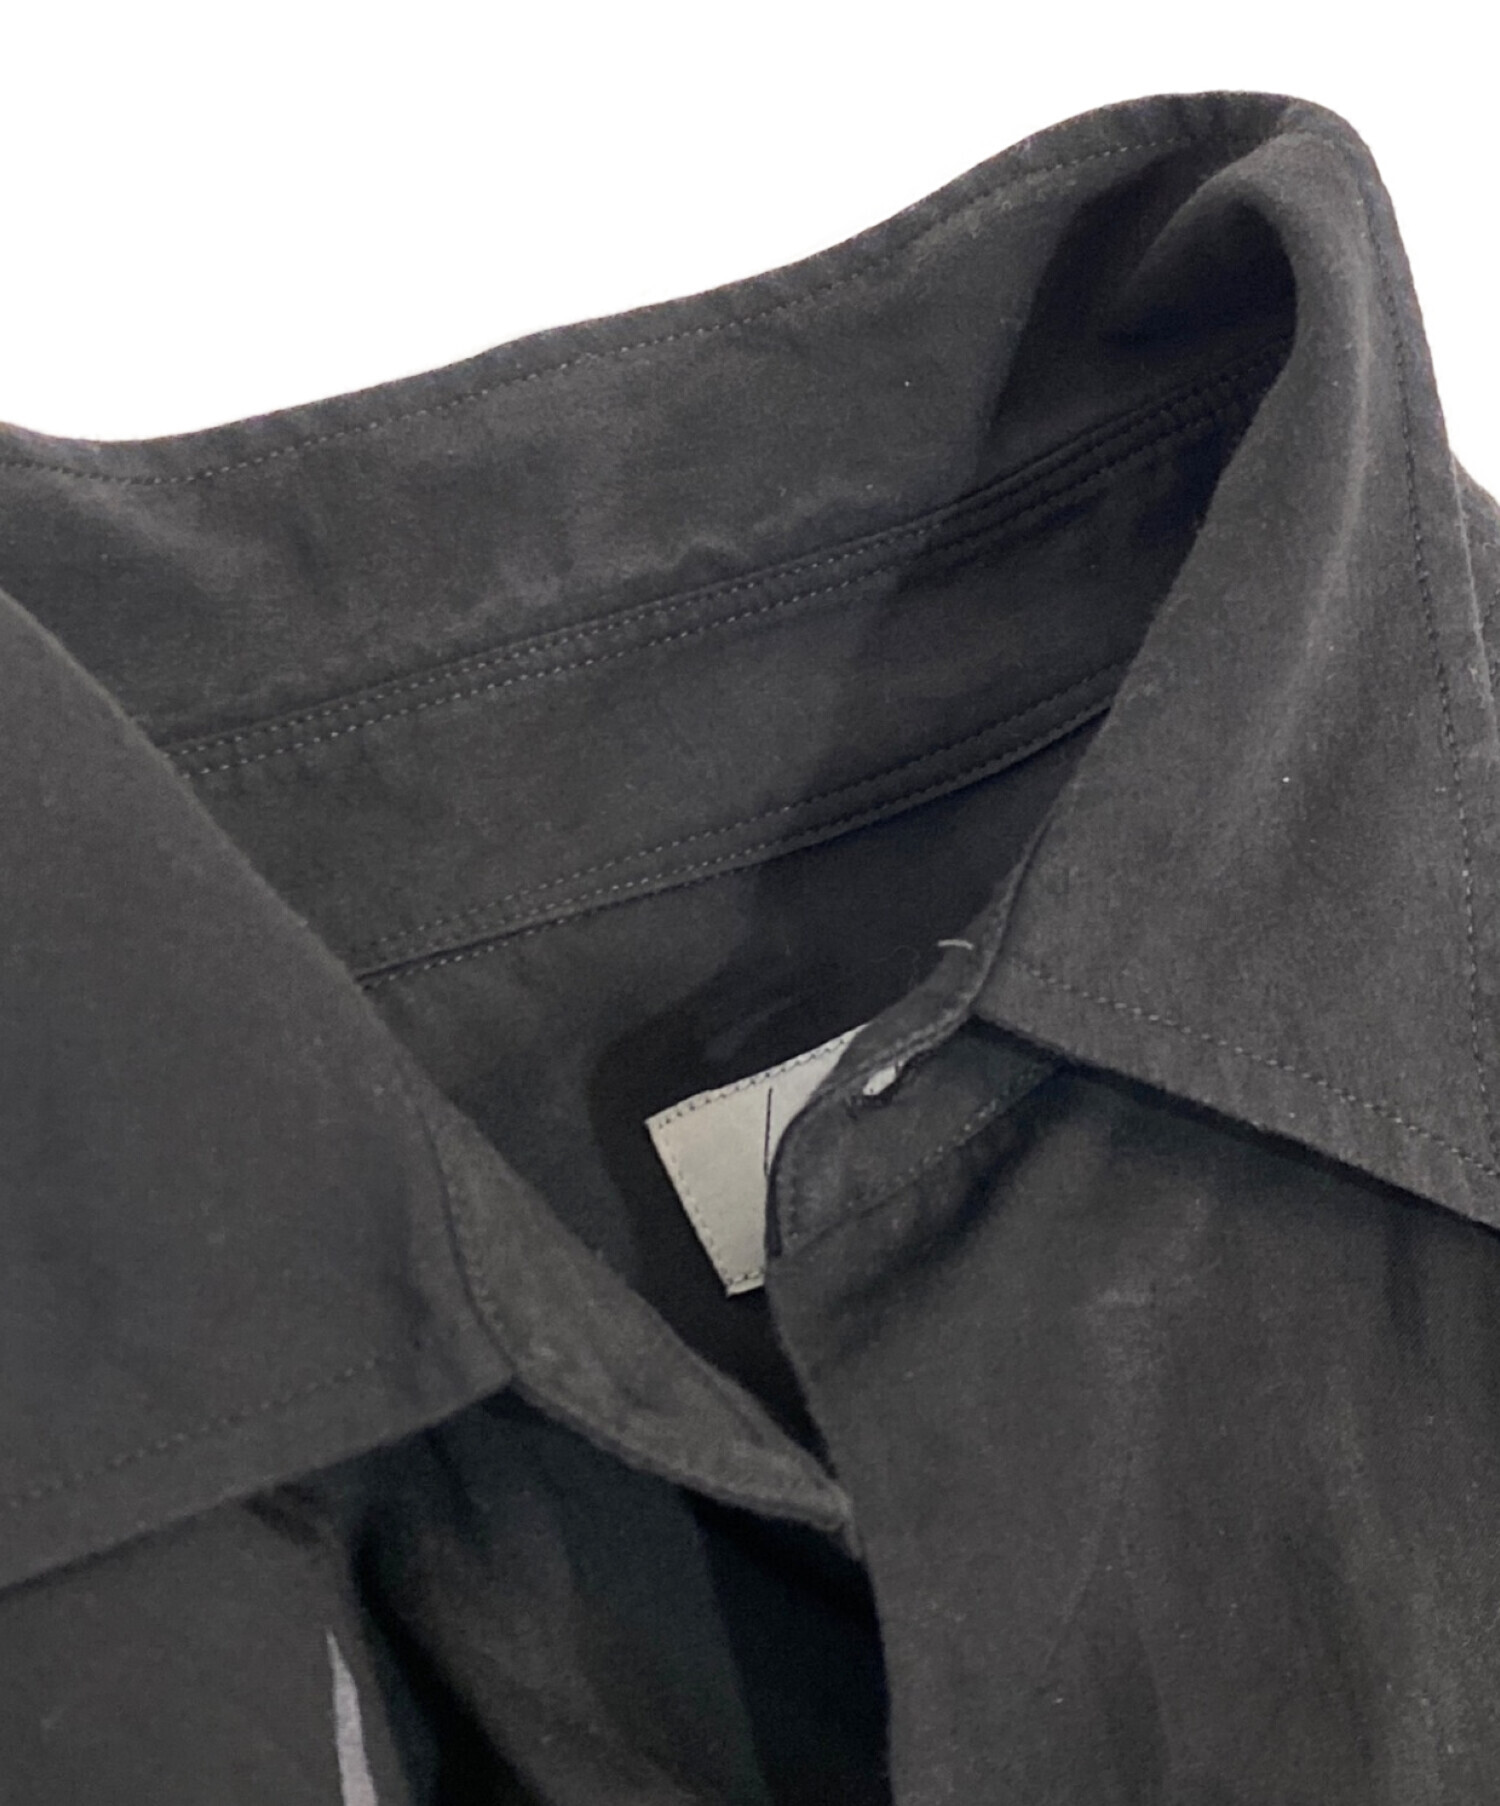 Yohji Yamamoto pour homme (ヨウジヤマモト プールオム) 22SS ダリアプリントブロード半袖 シャツ ブラック サイズ:3